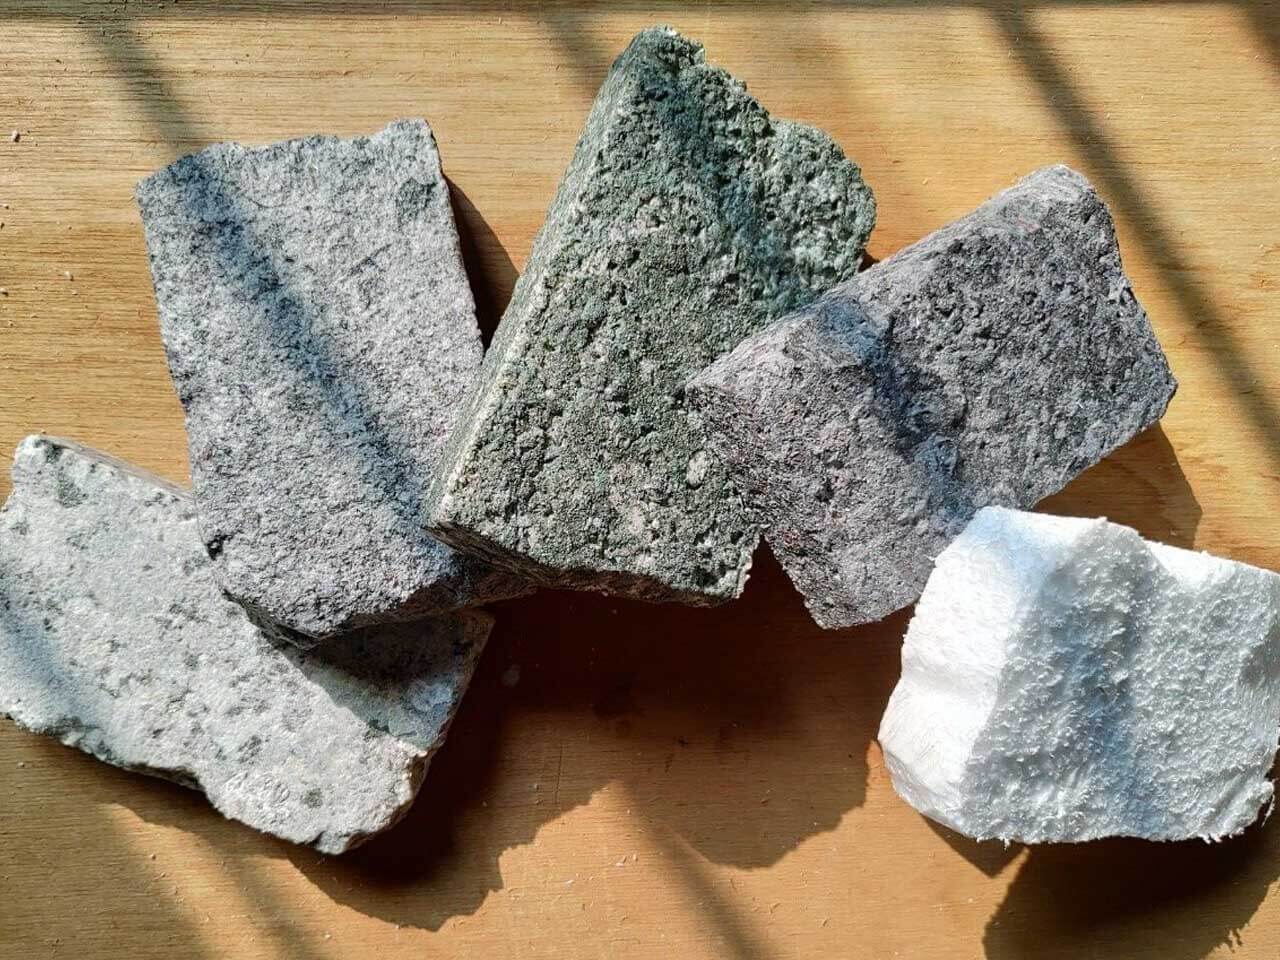 เมื่อนำโฟมมาพ่นสีเลียนแบบหินแกรนิต กลายเป็นหินแกรนิตที่มีน้ำหนักเบา